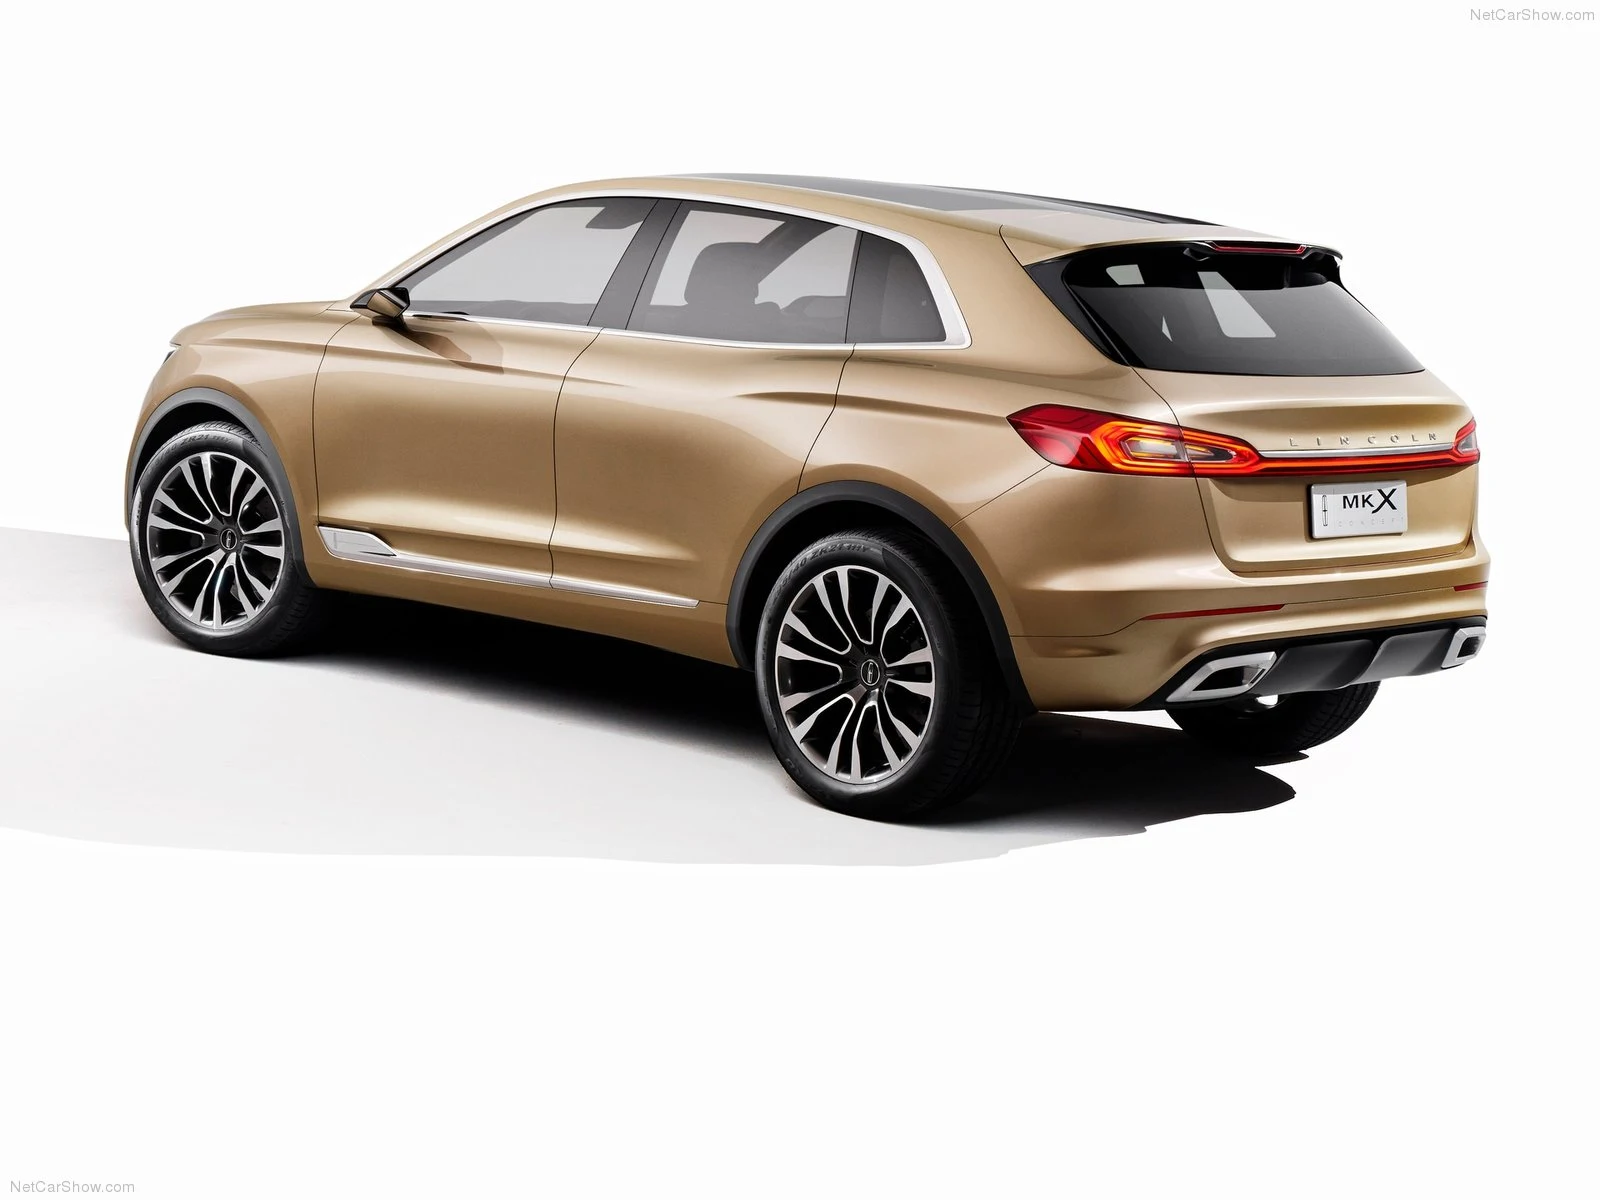 Hình ảnh xe ô tô Lincoln MKX Concept 2014 & nội ngoại thất